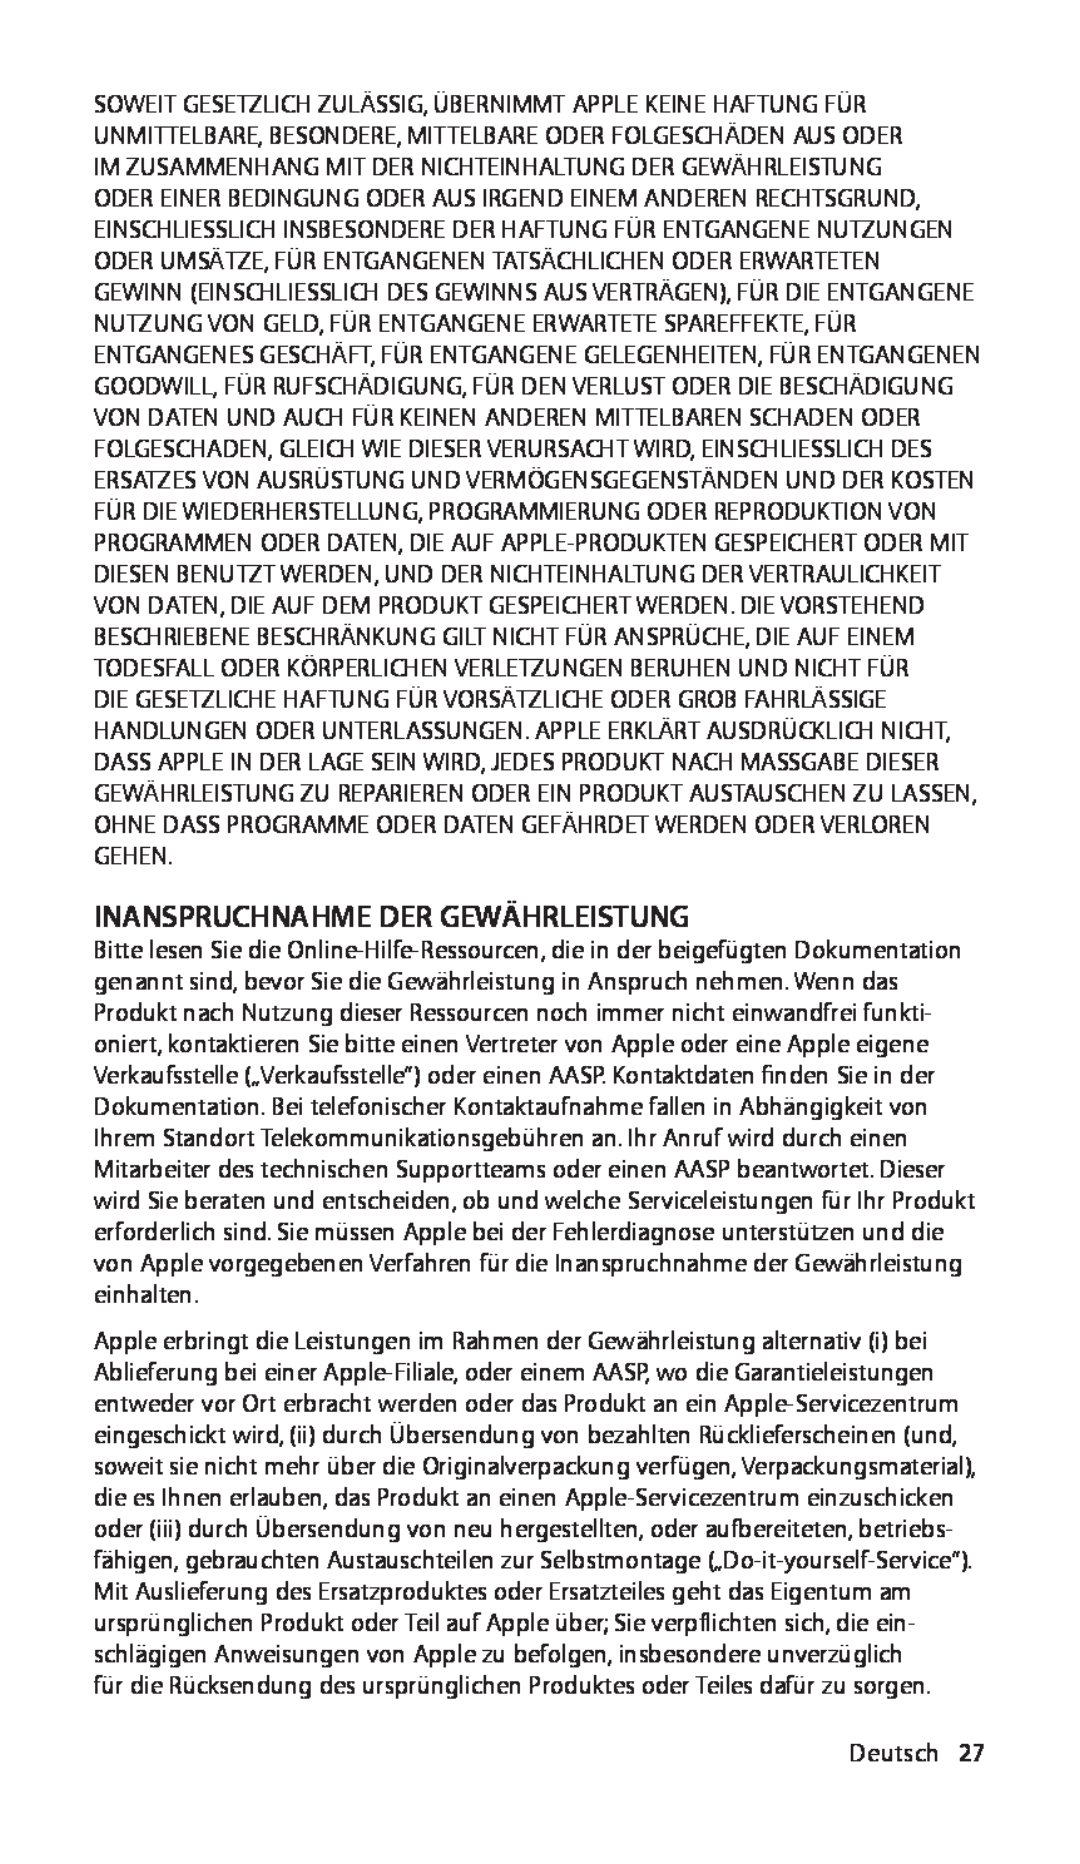 Apple ZM034-4942-A manual Inanspruchnahme Der Gewährleistung, Deutsch27 